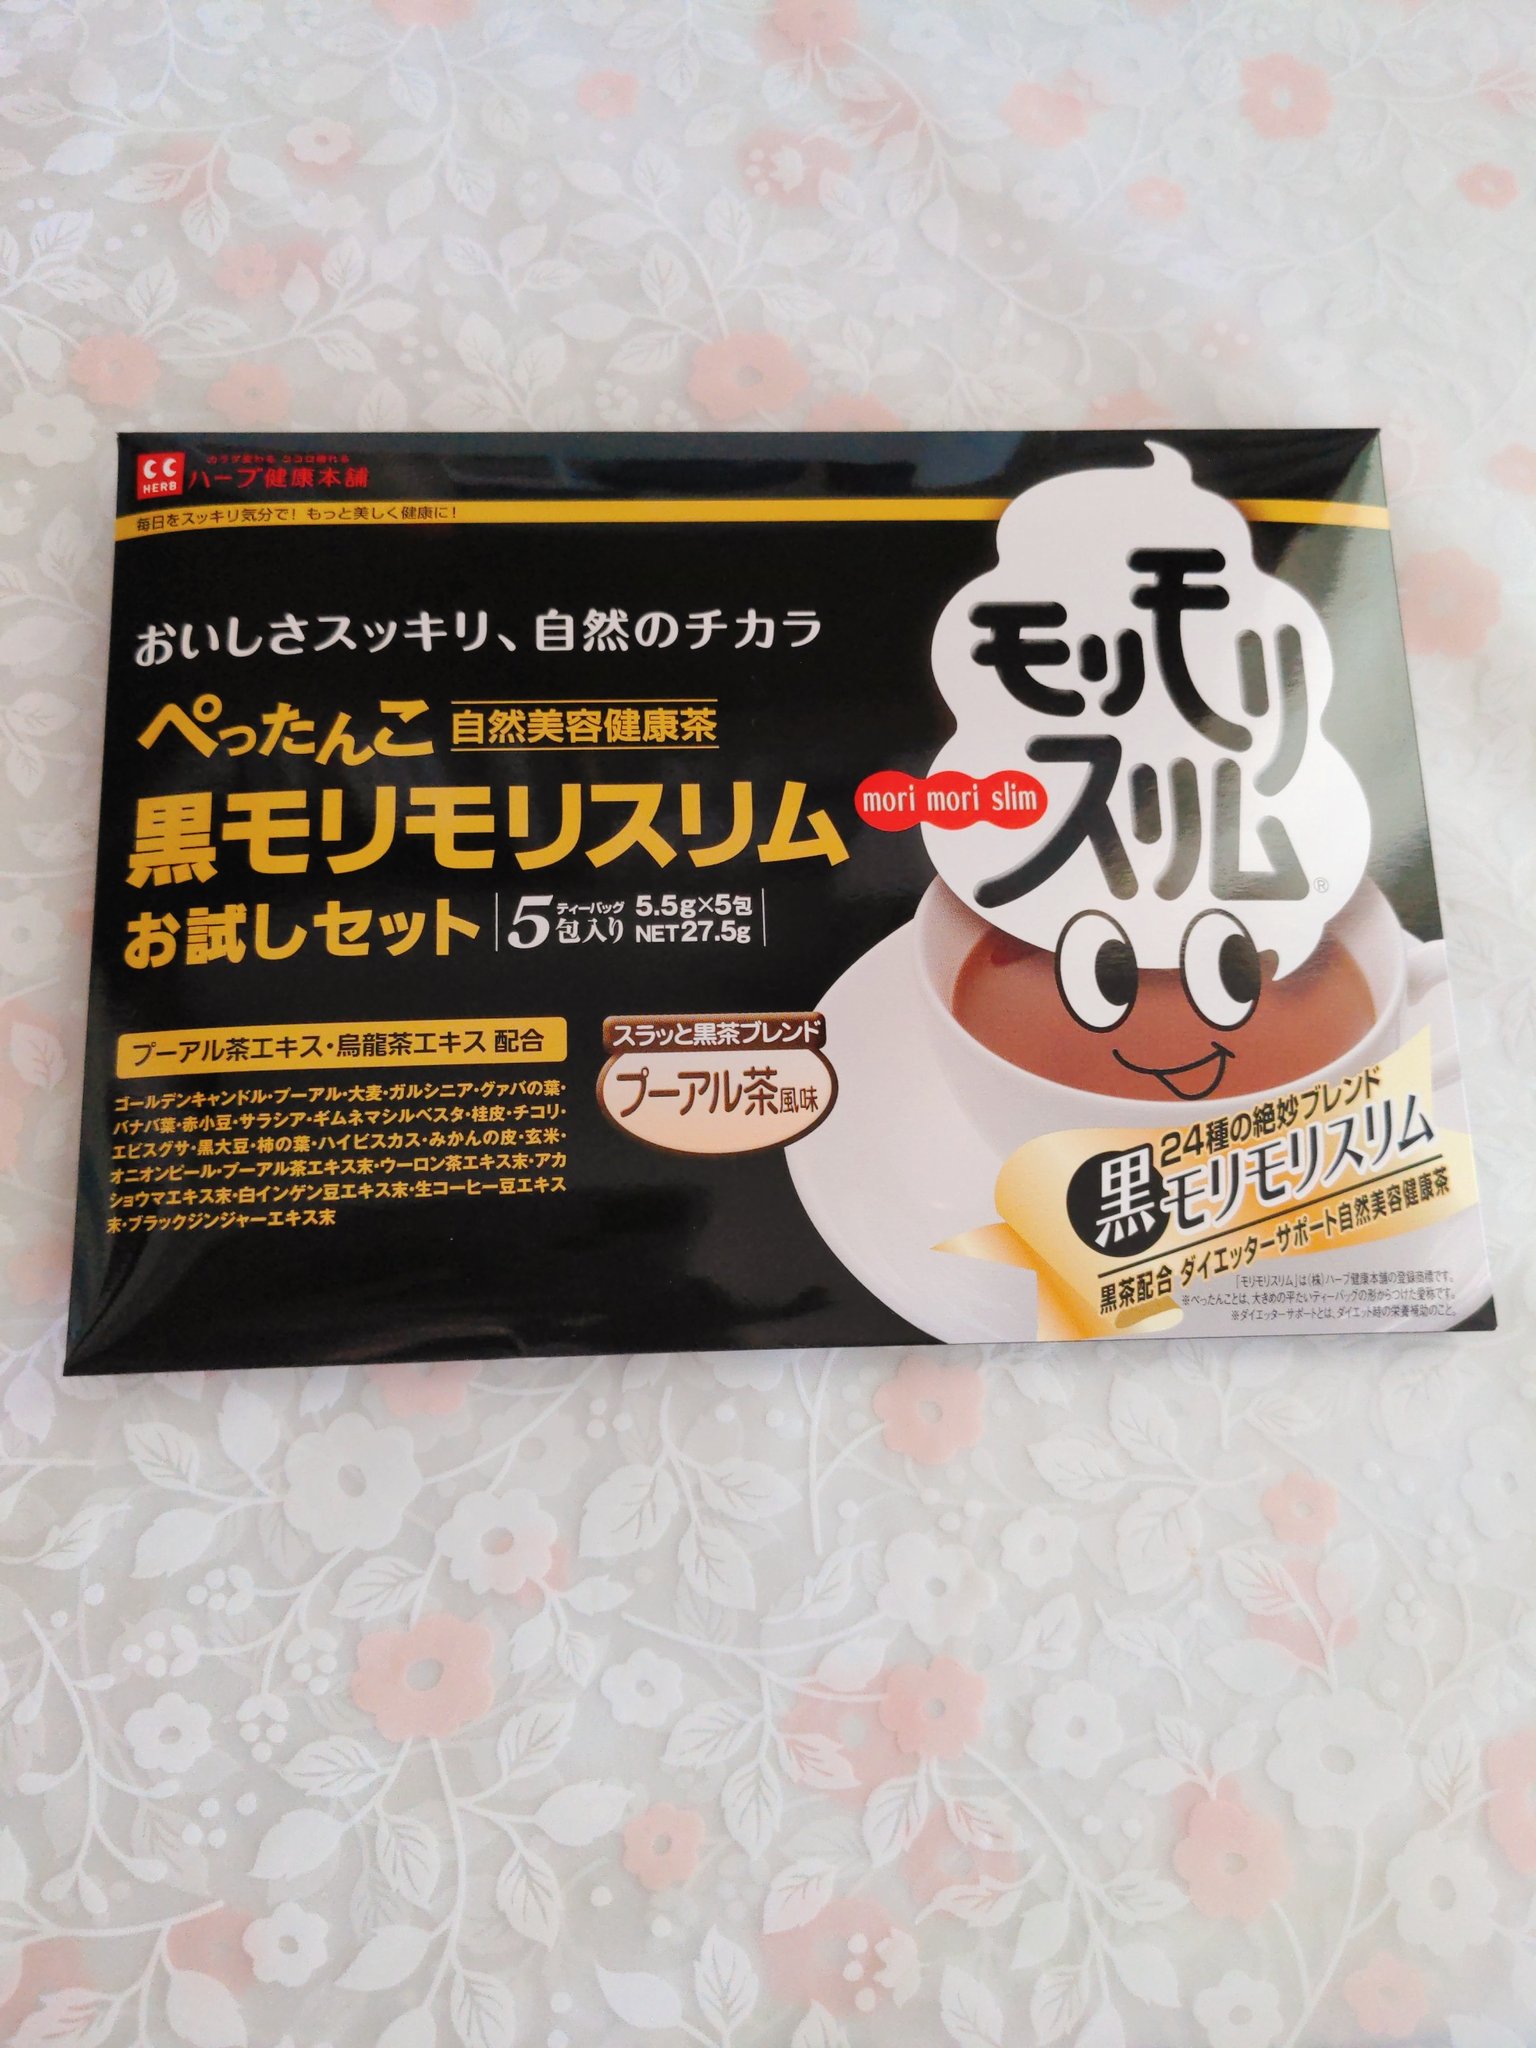 ハーブ健康本舗 黒モリモリスリム茶 プーアル茶風味 5.5g×5包 【特別